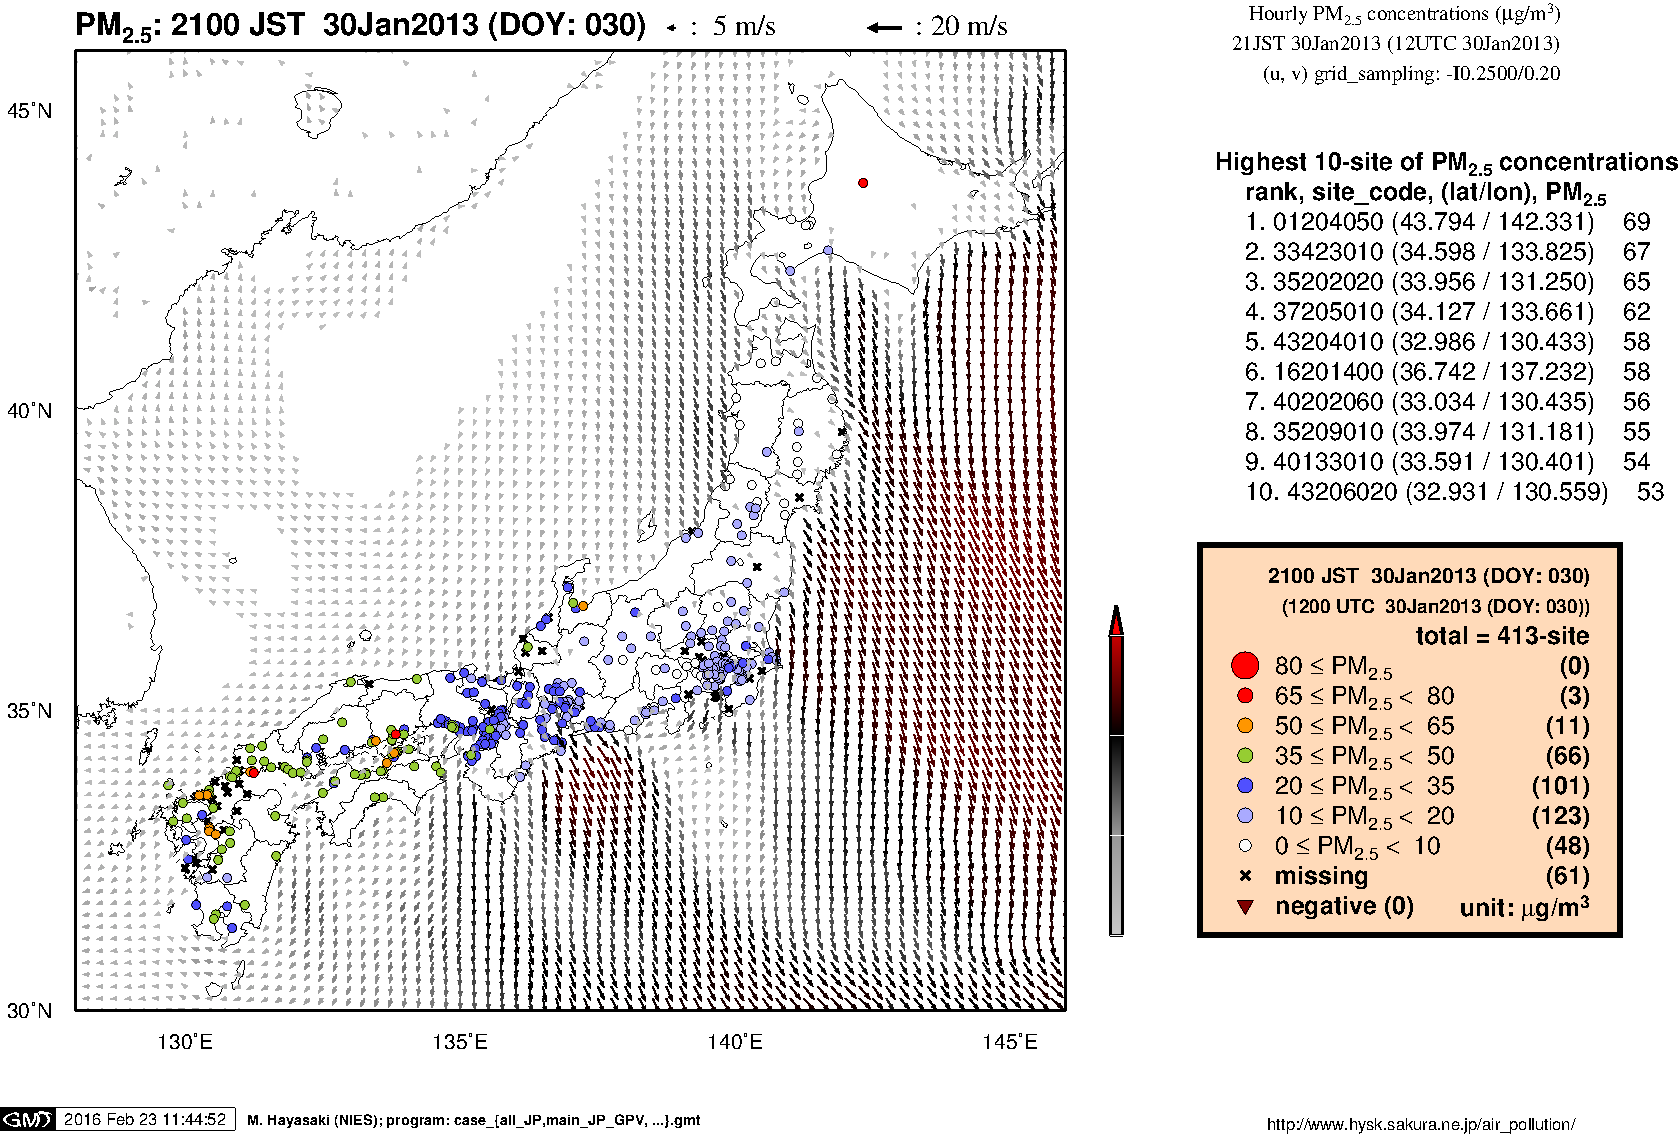 PM2.5 concentration in Japan (21JST 30Jan2013)